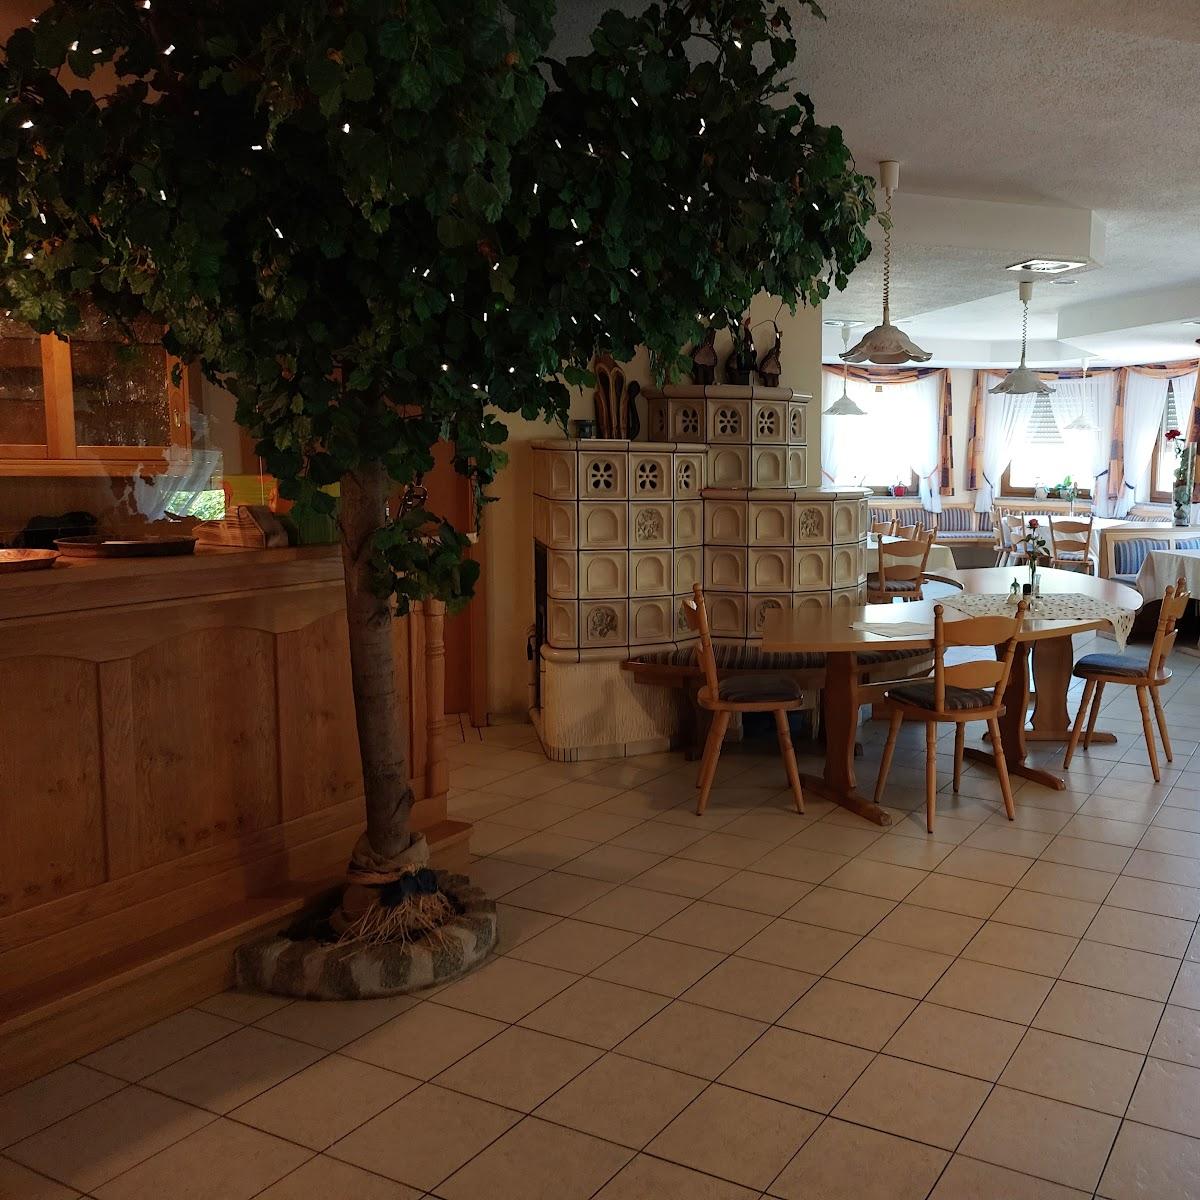 Restaurant "Cafe - Pension Egerstau" in Hohenberg an der Eger